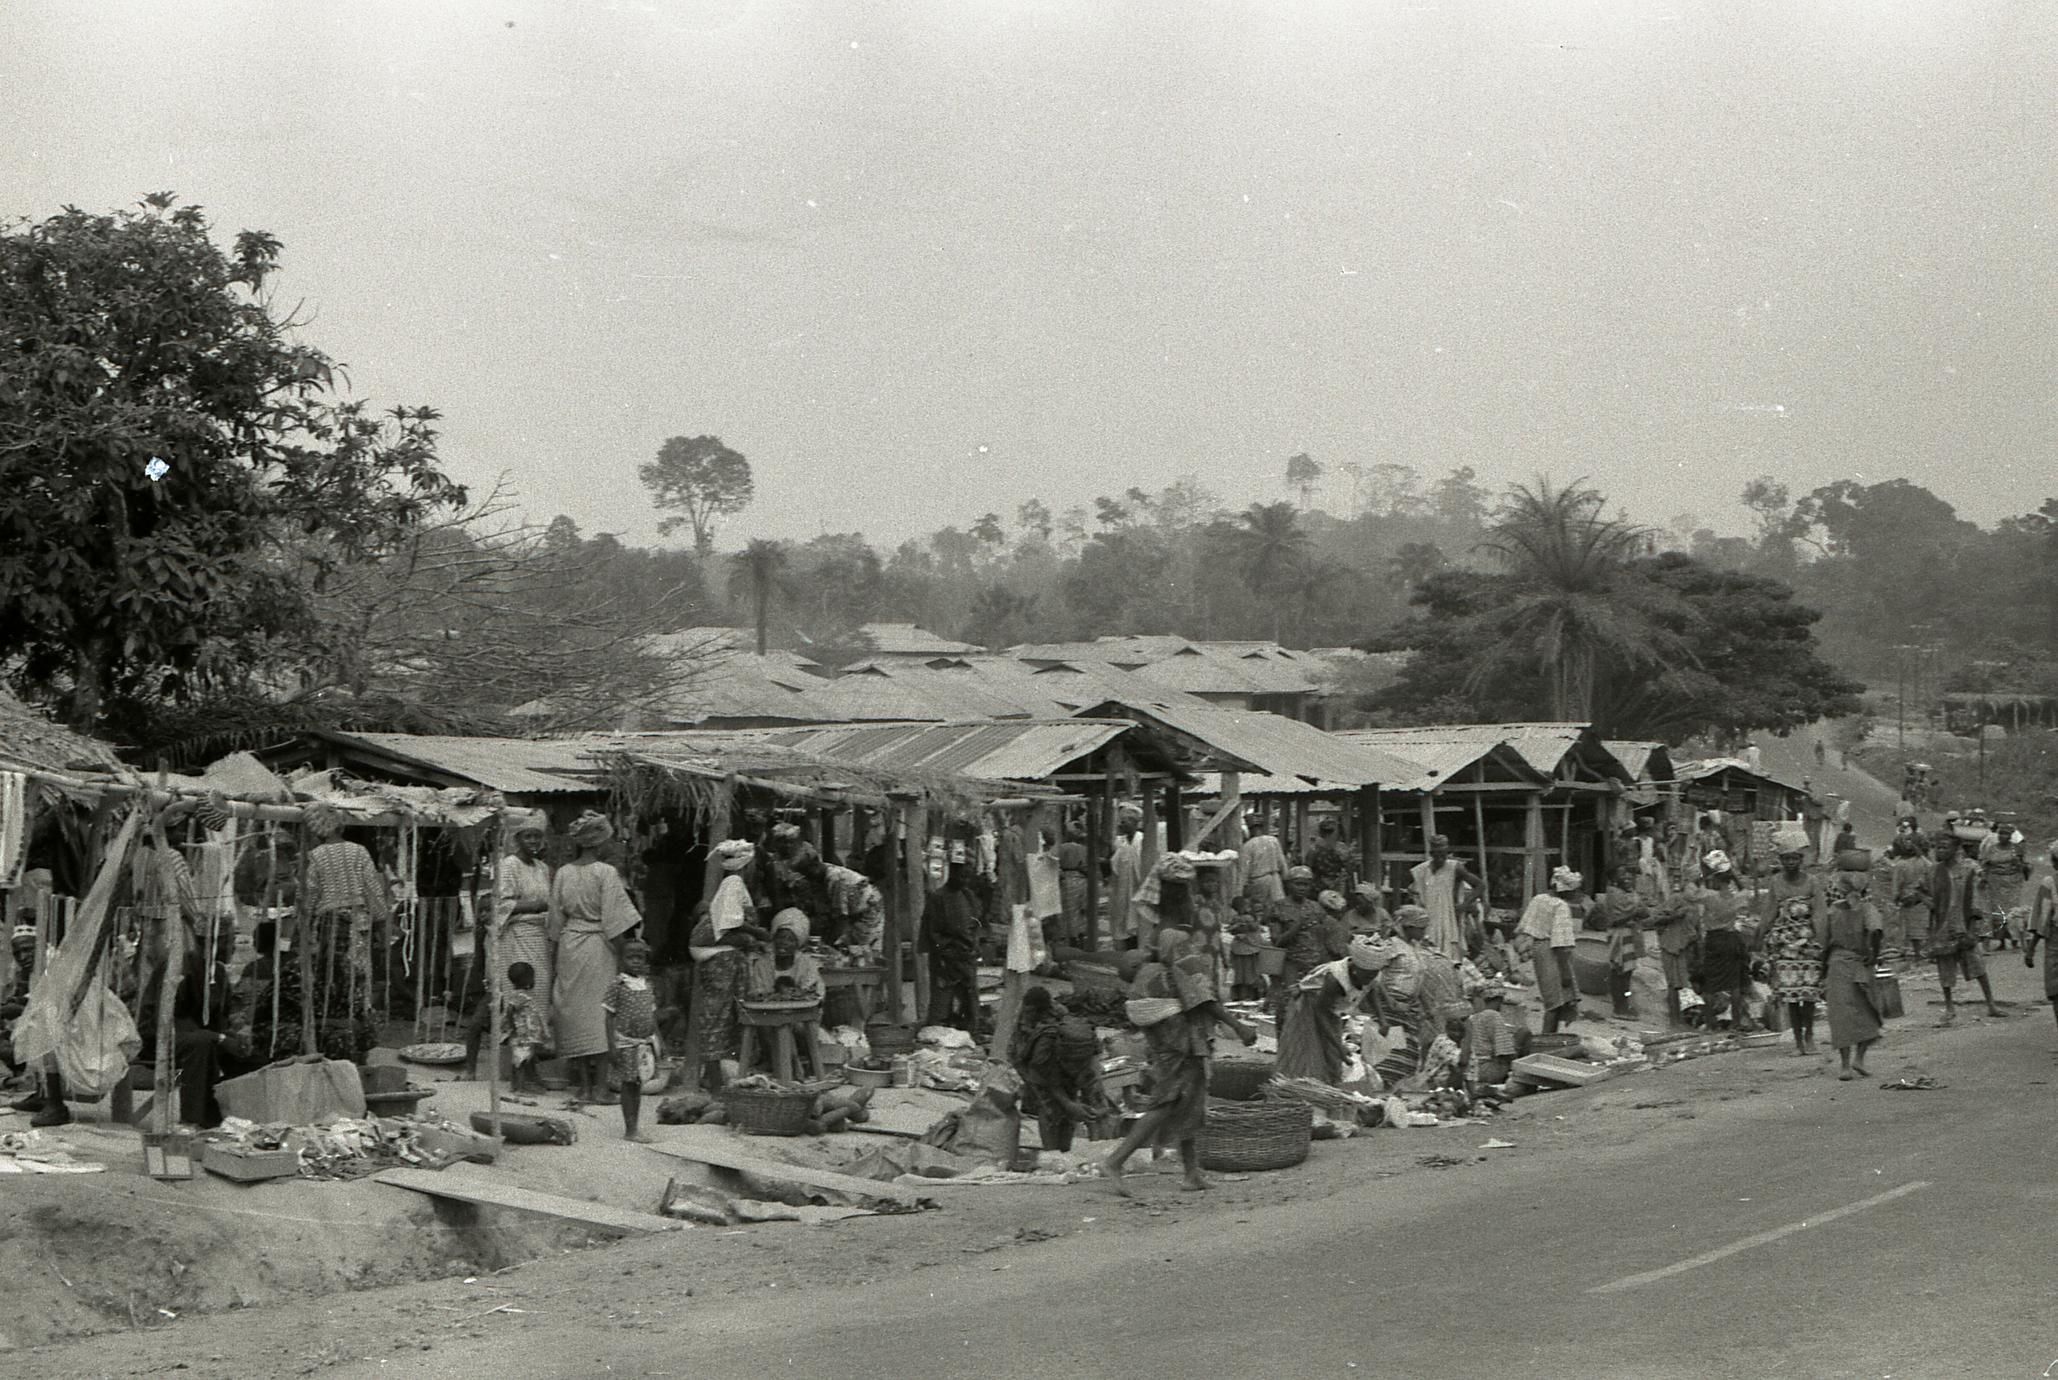 Road view of Iwara market